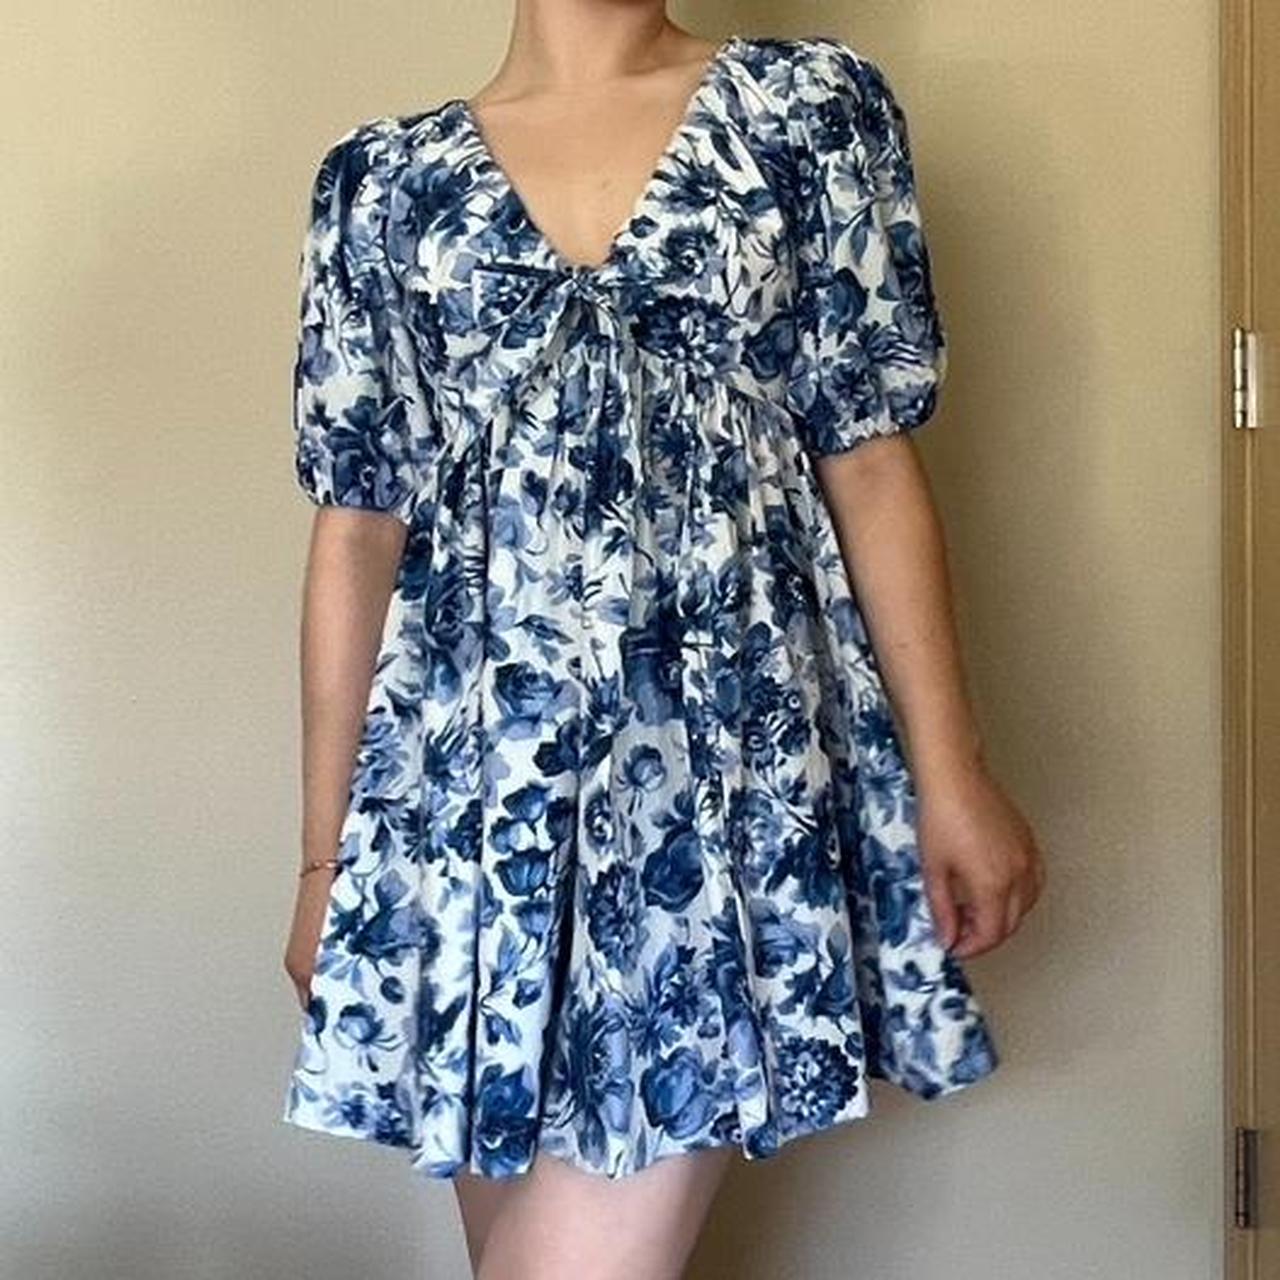 Abercrombie & Fitch skort mini dress in blue